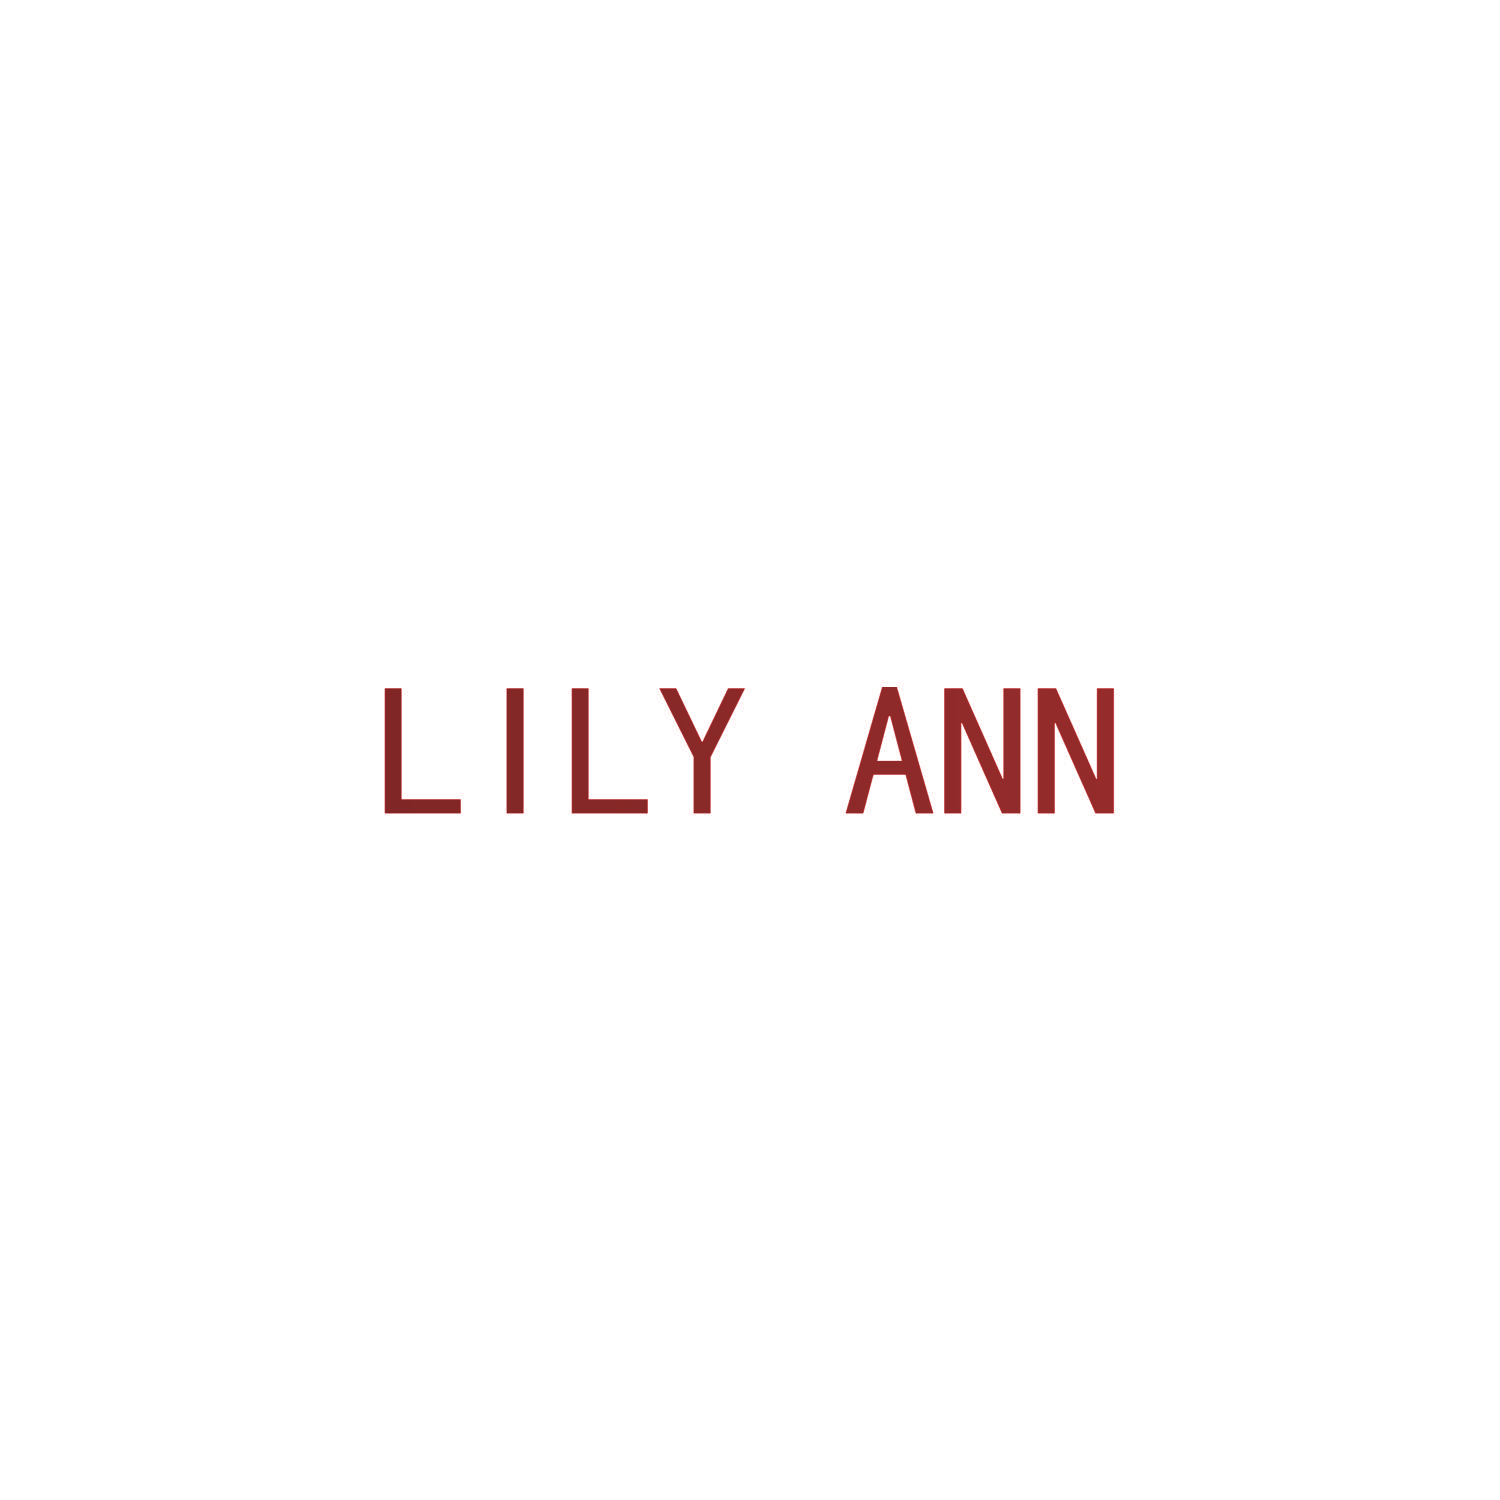 LILY ANN